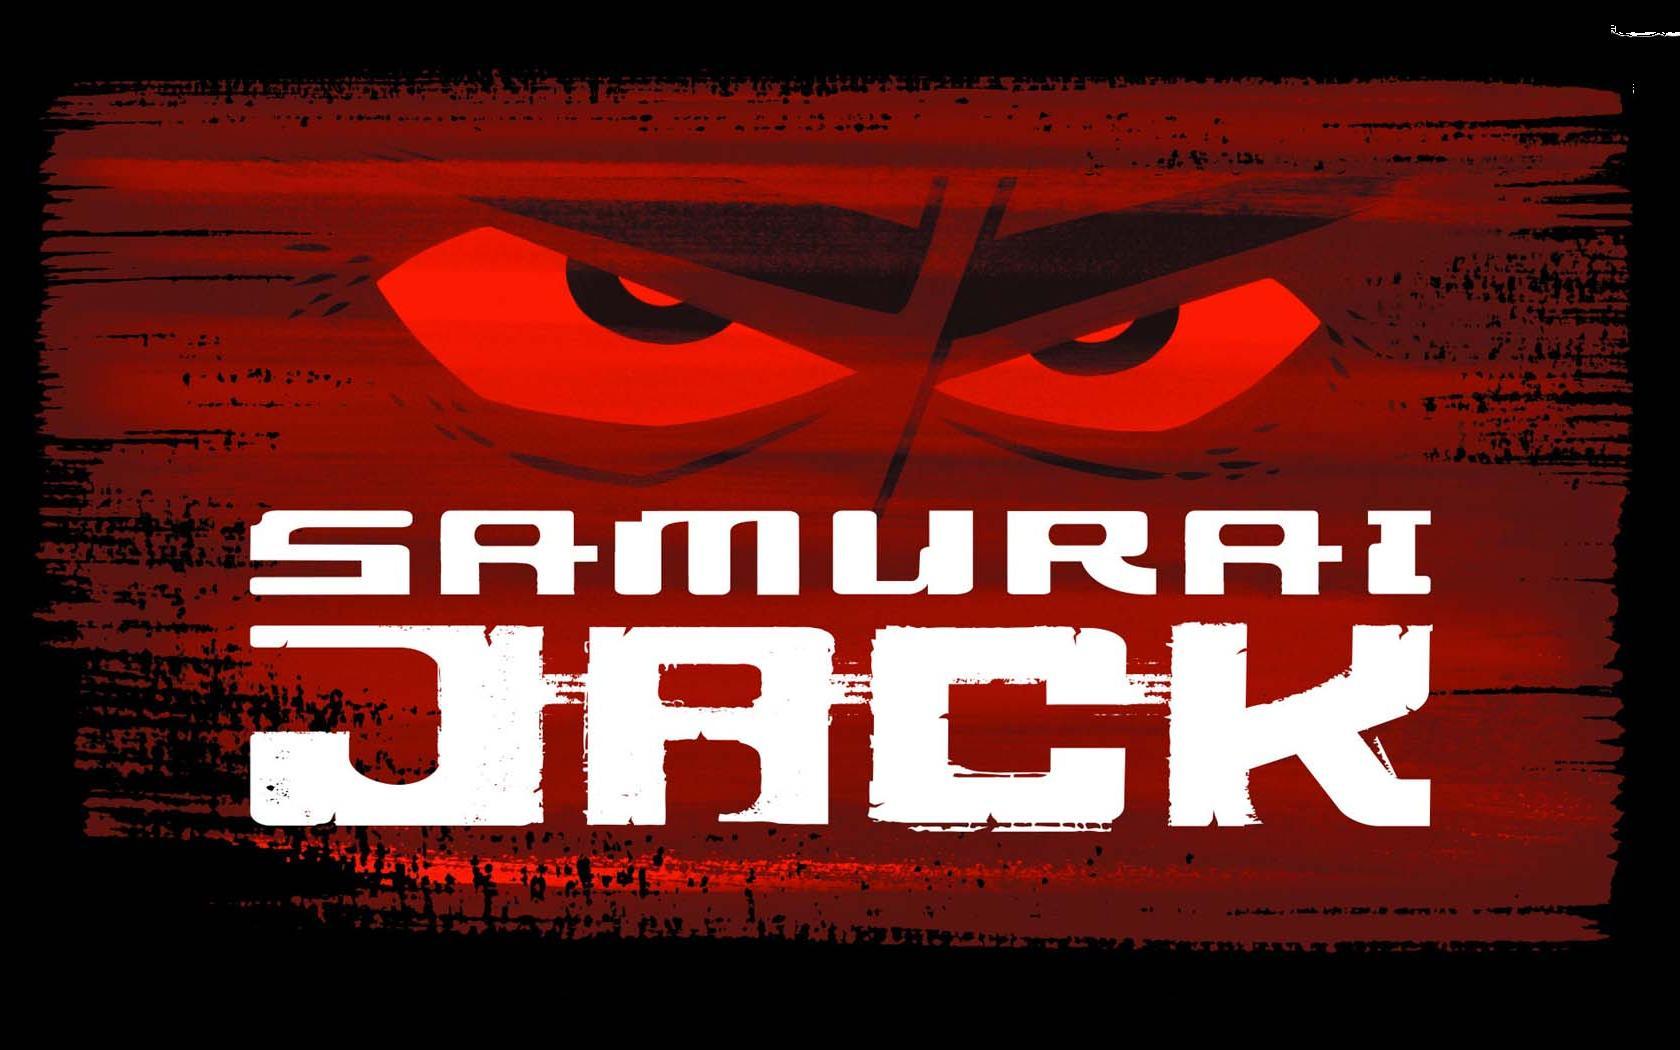 Samurai Jack HD Wallpaper